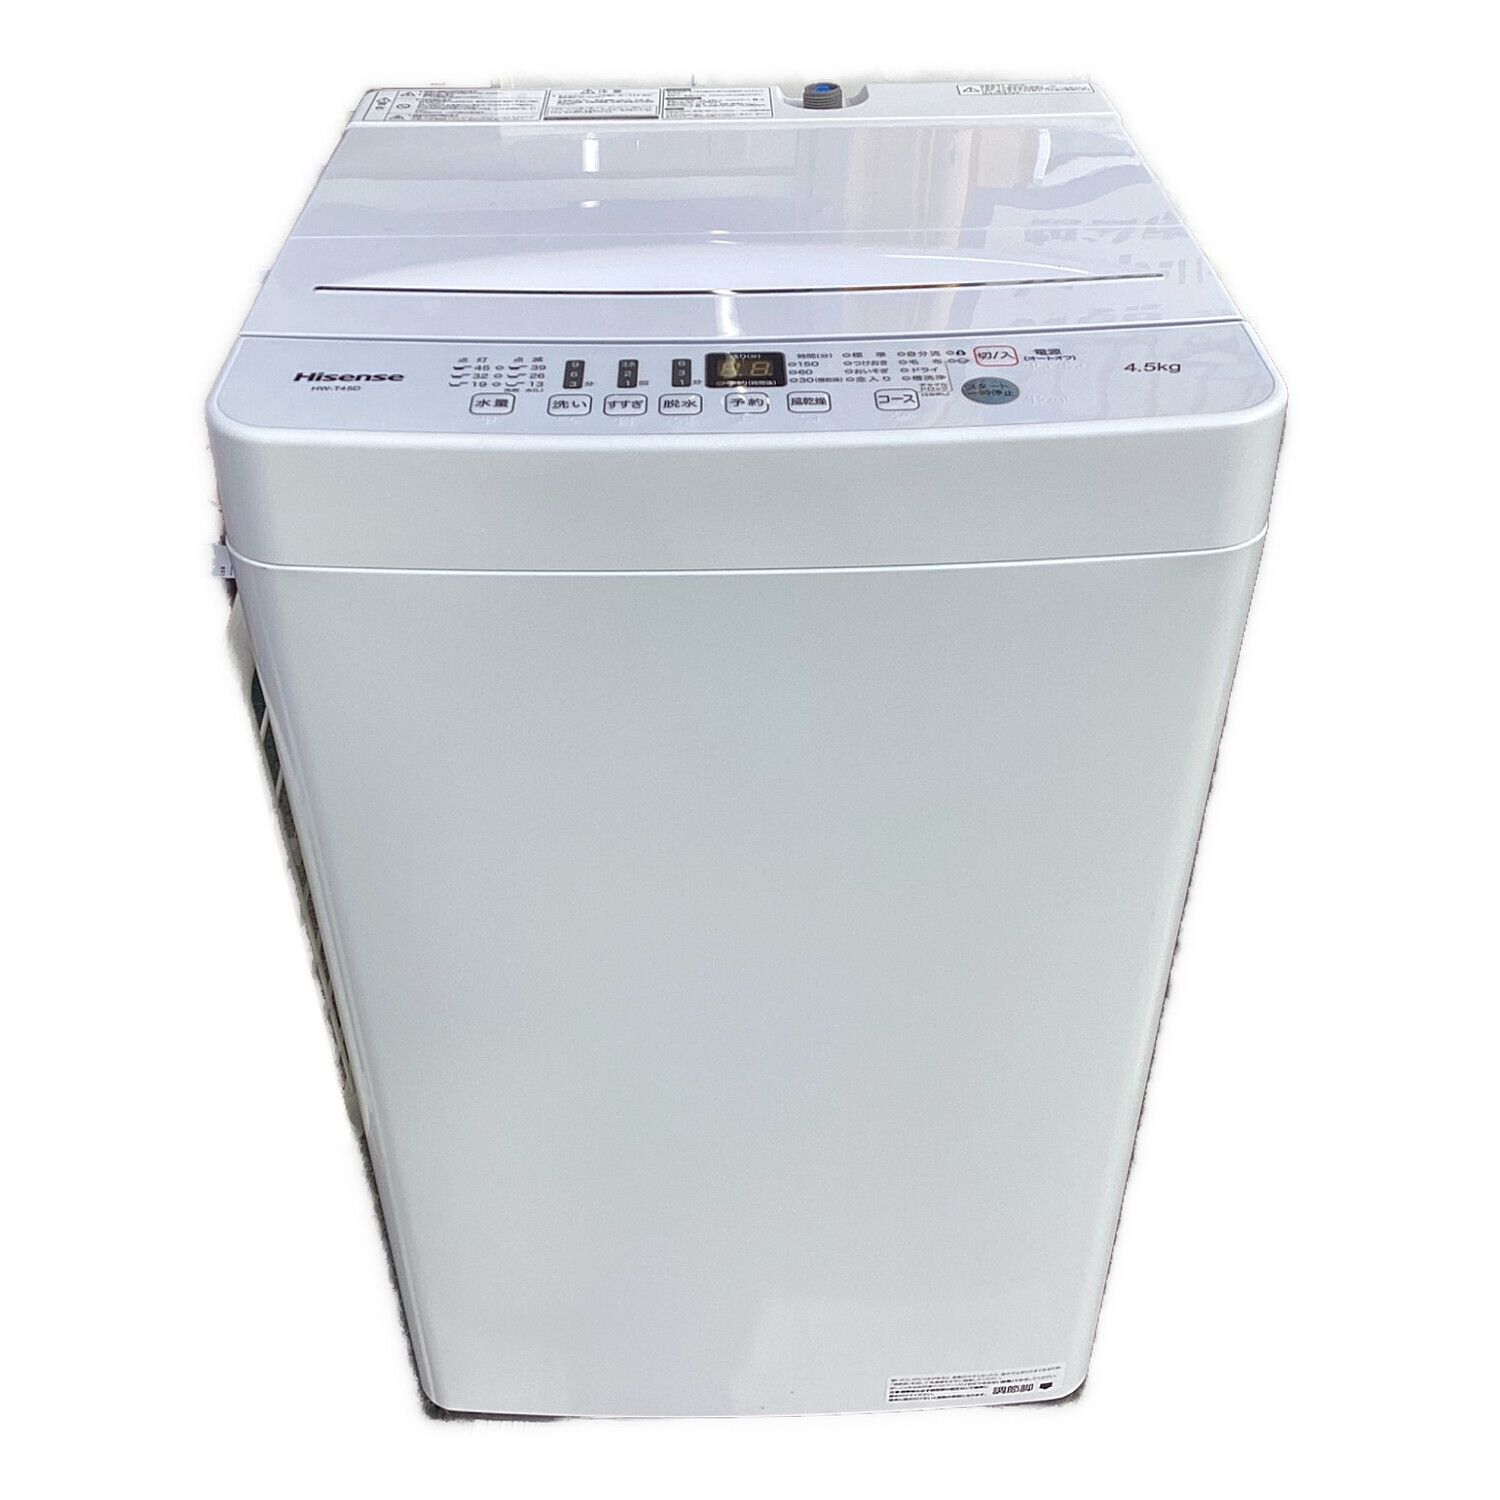 Hisense ハイセンス 洗濯機 HW-E4503 2017年製 4.5kg - 生活家電